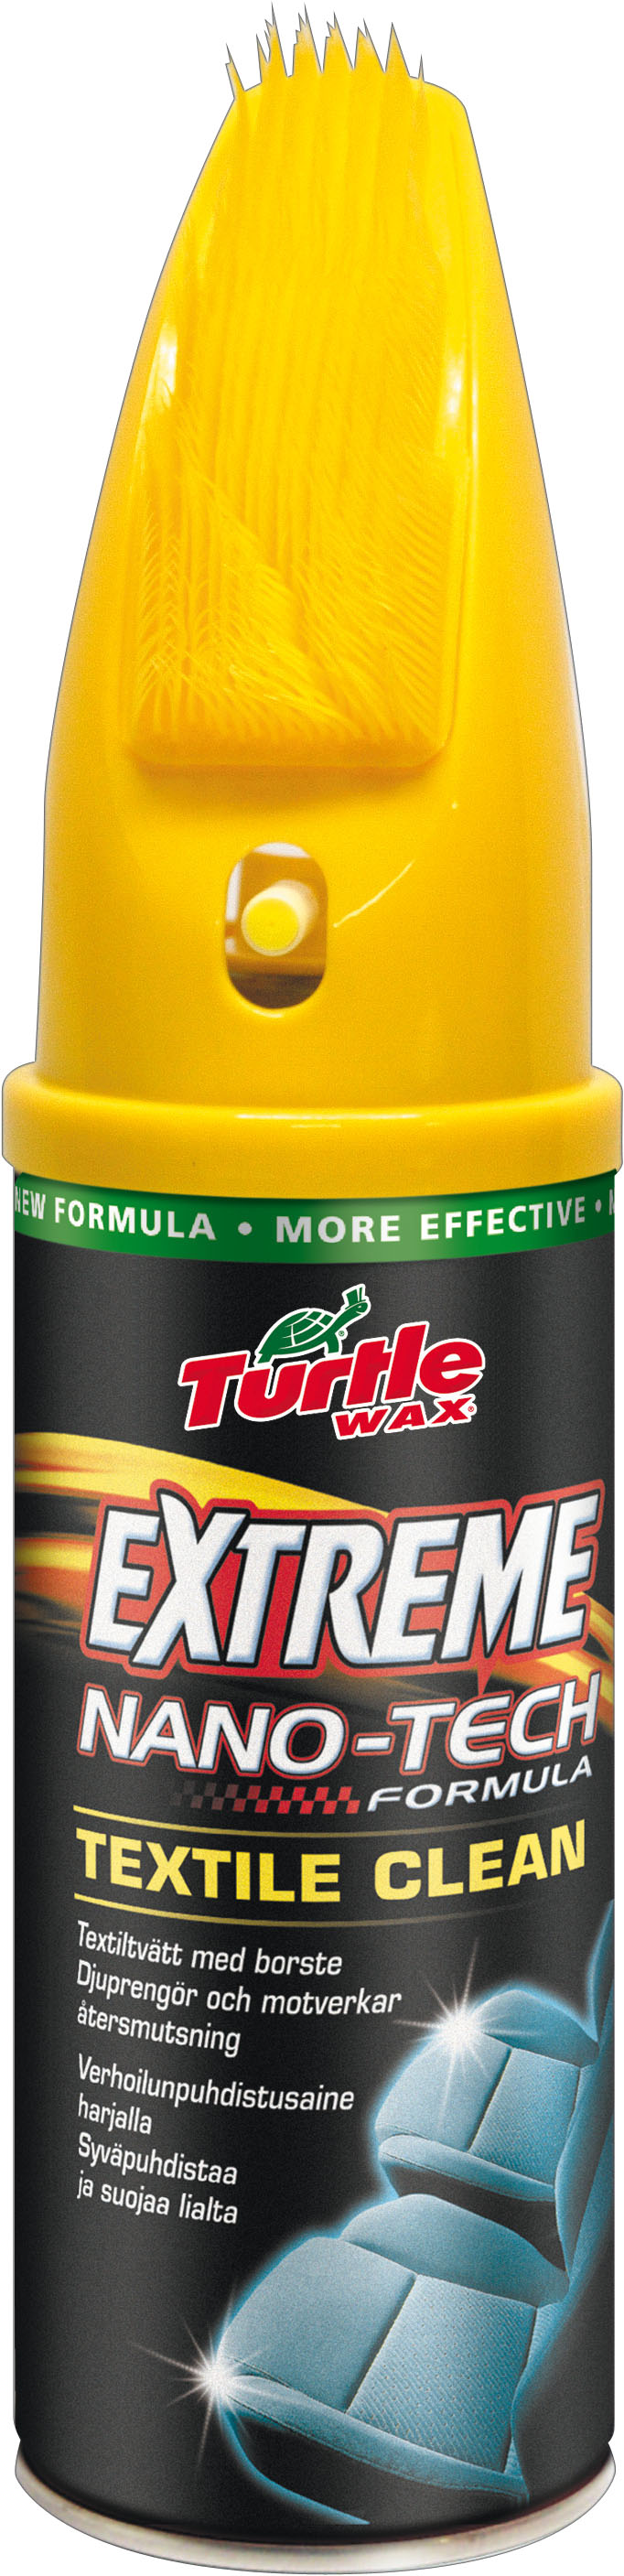 Se Turtle Extreme Textile cleaner 300 ml hos Dækbutikken - Dæk og Fælge